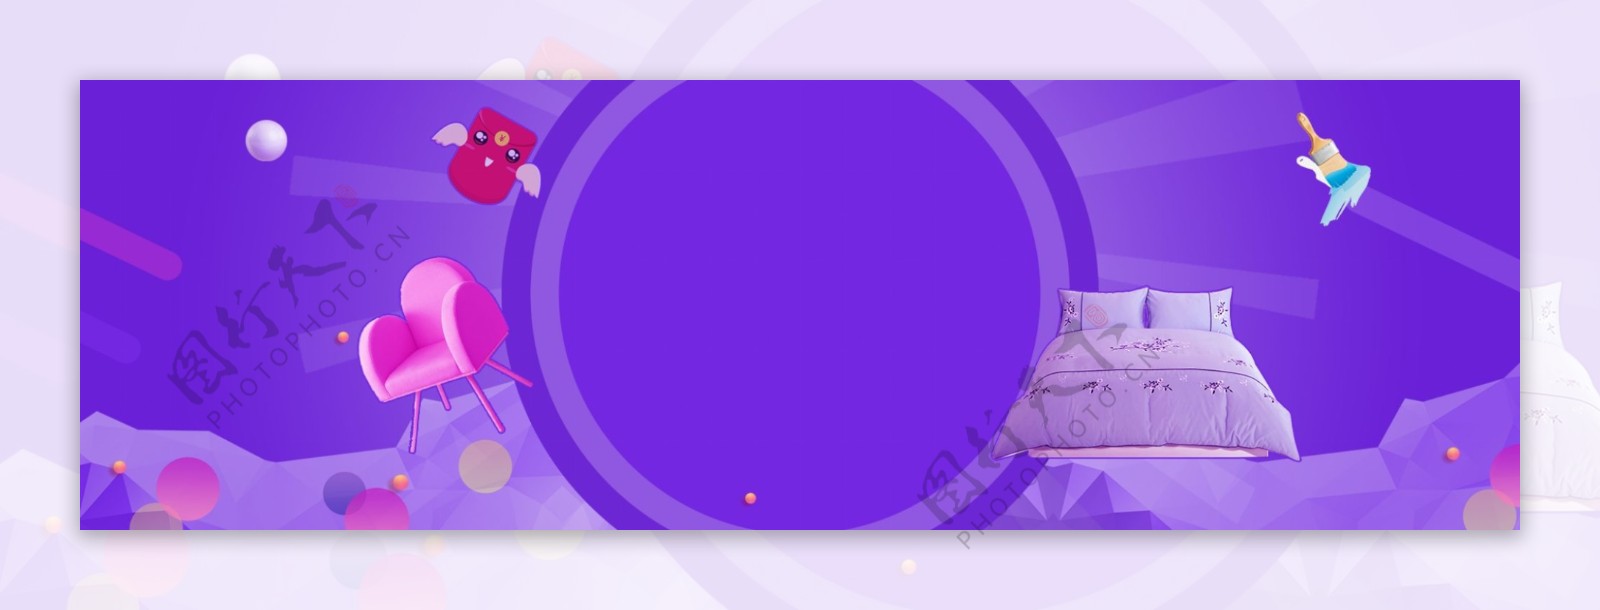 紫色banner背景图